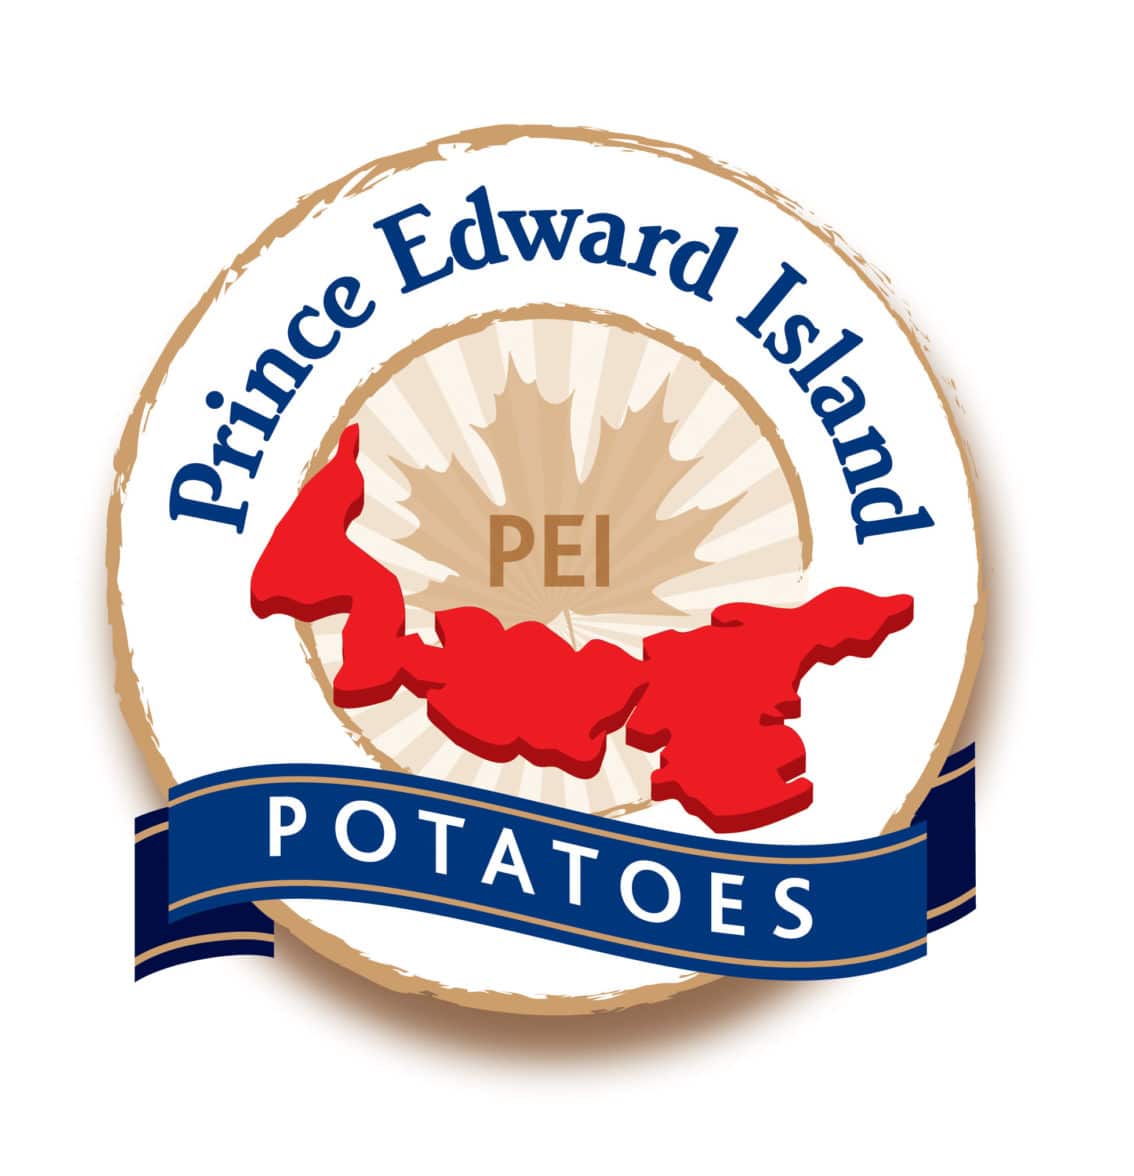 Prince Edward Island Potato Board logo